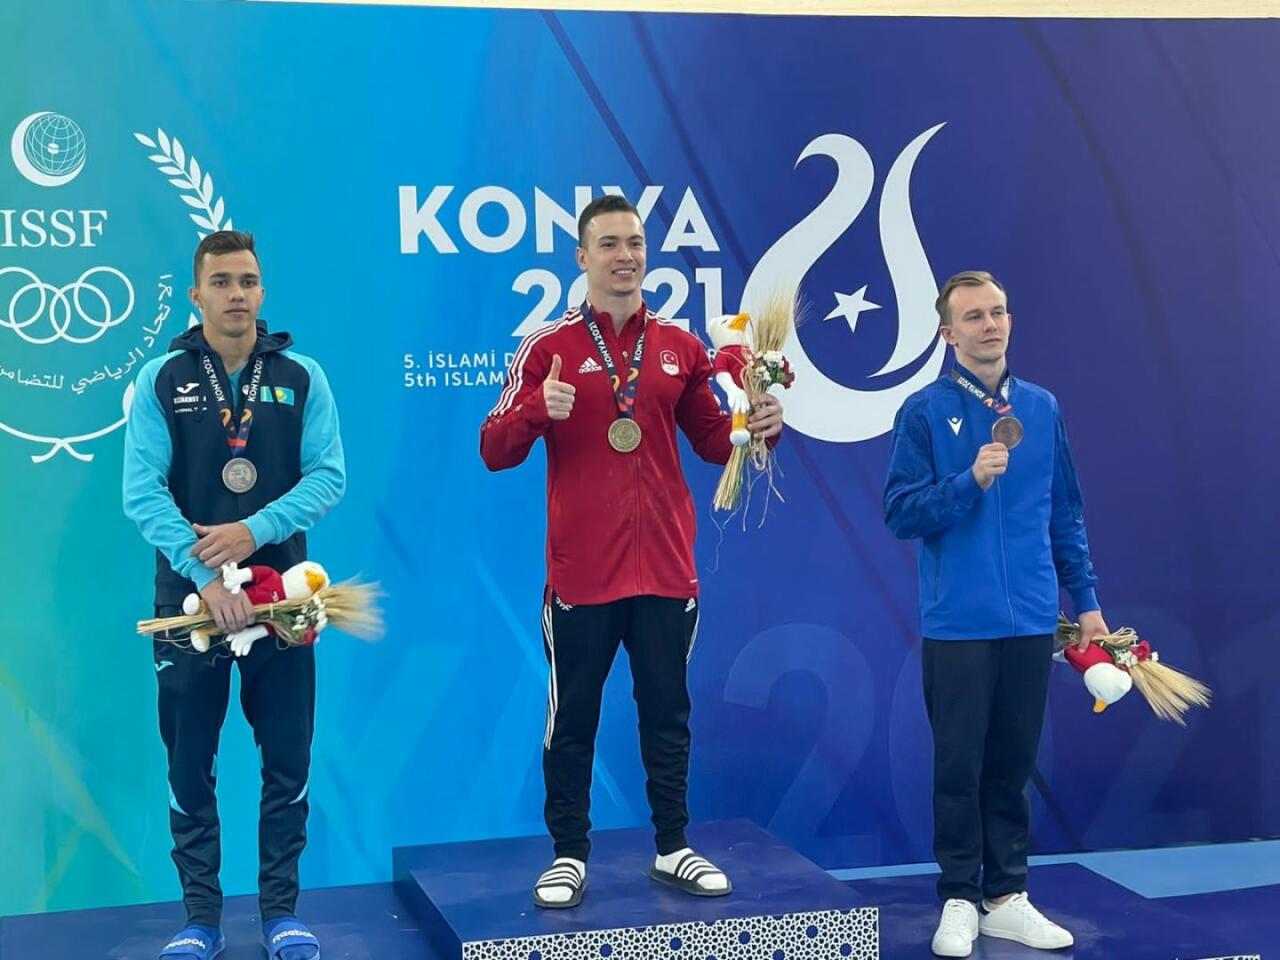 Азербайджанский гимнаст Иван Тихонов завоевал еще одну медаль на V Играх исламской солидарности